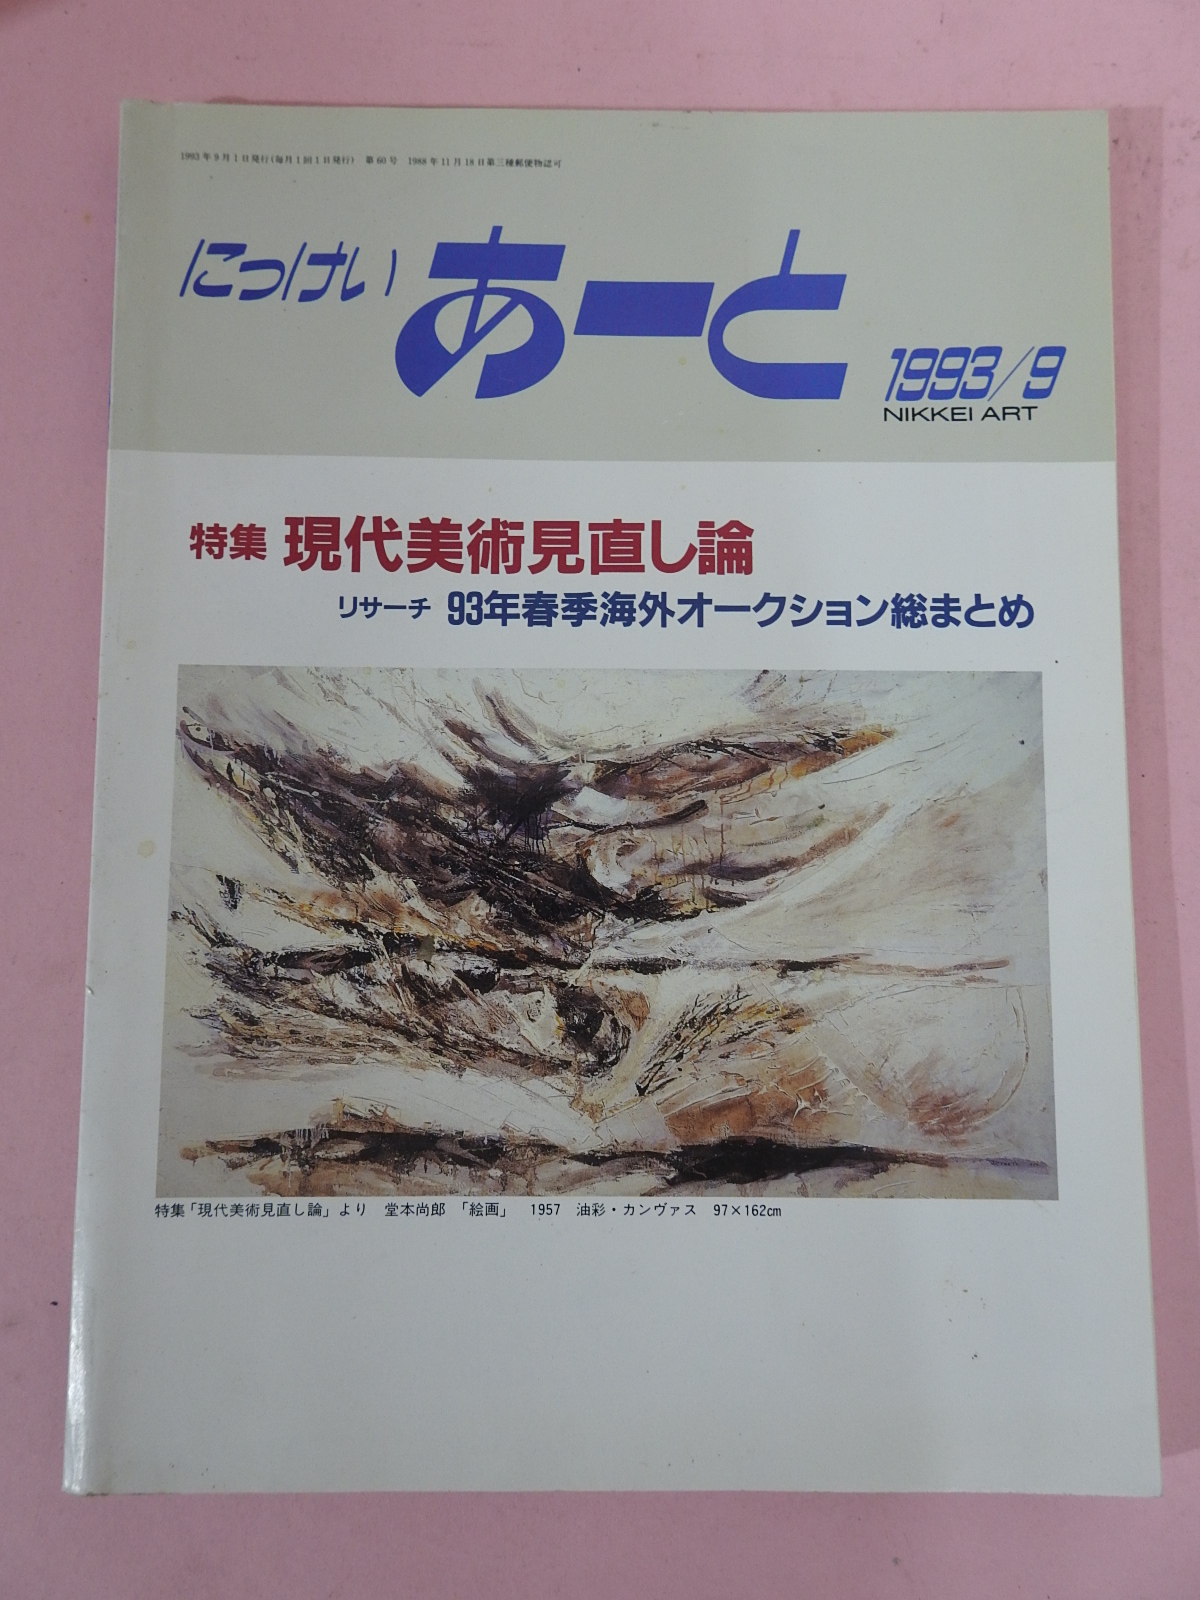 1993년 일본미술잡지